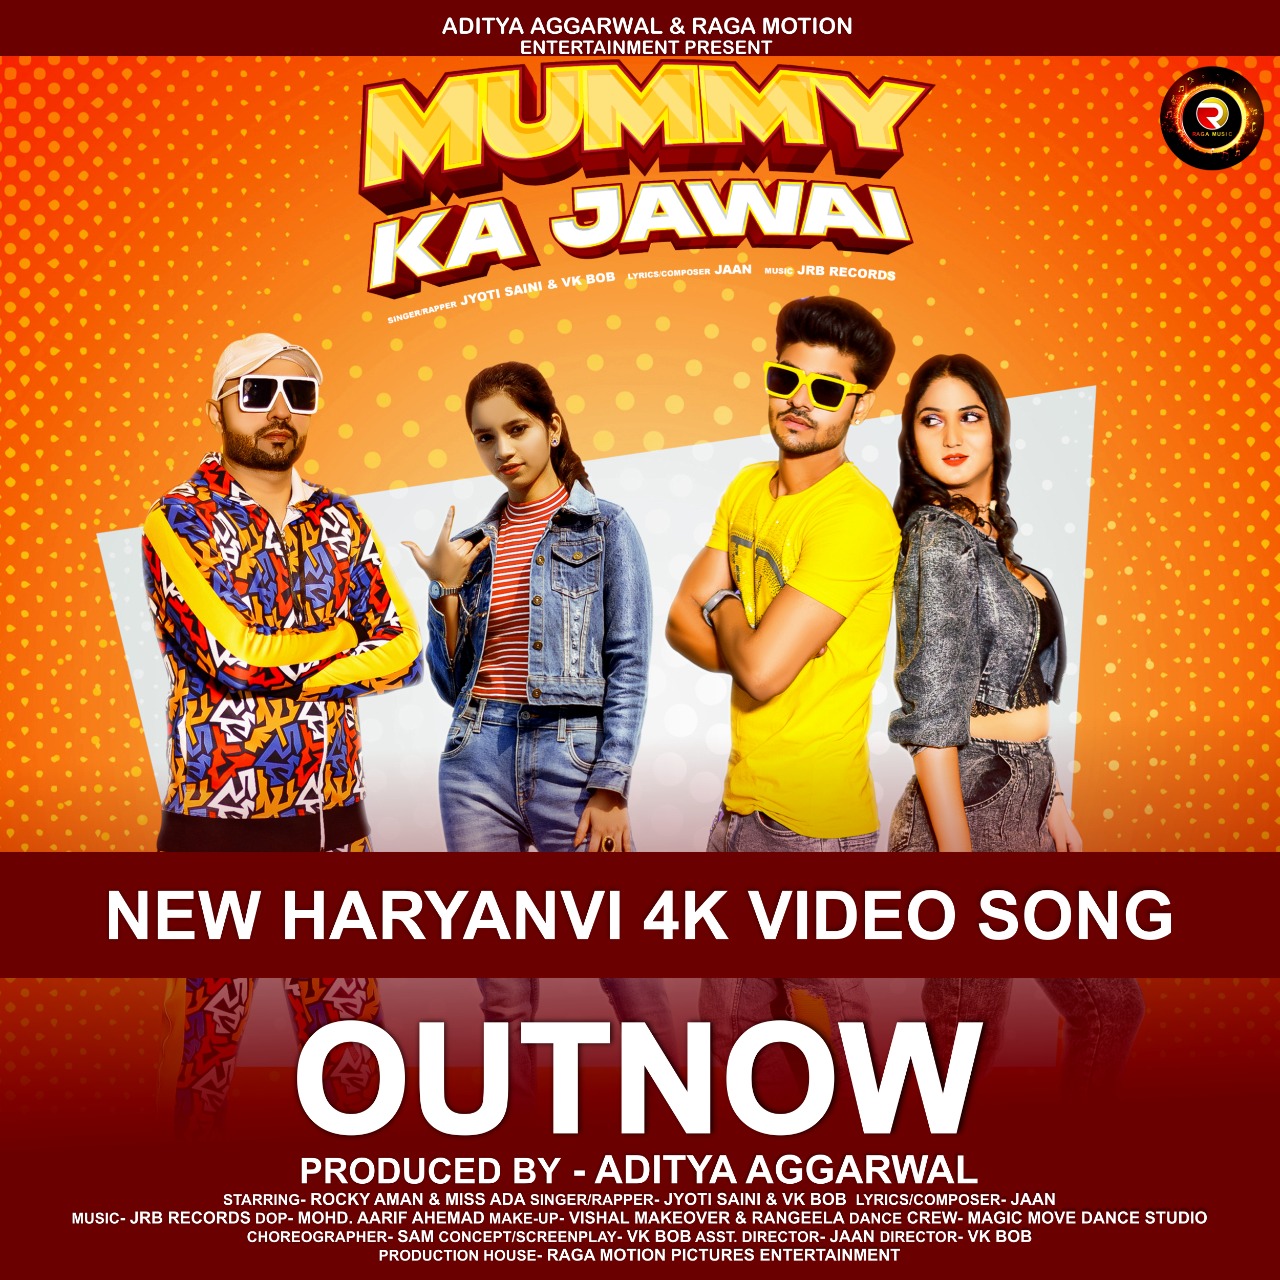 Mummy Ka Jawai, New Haryanvi Song Produced By Aditya Aggarwal Is Creating Buzz